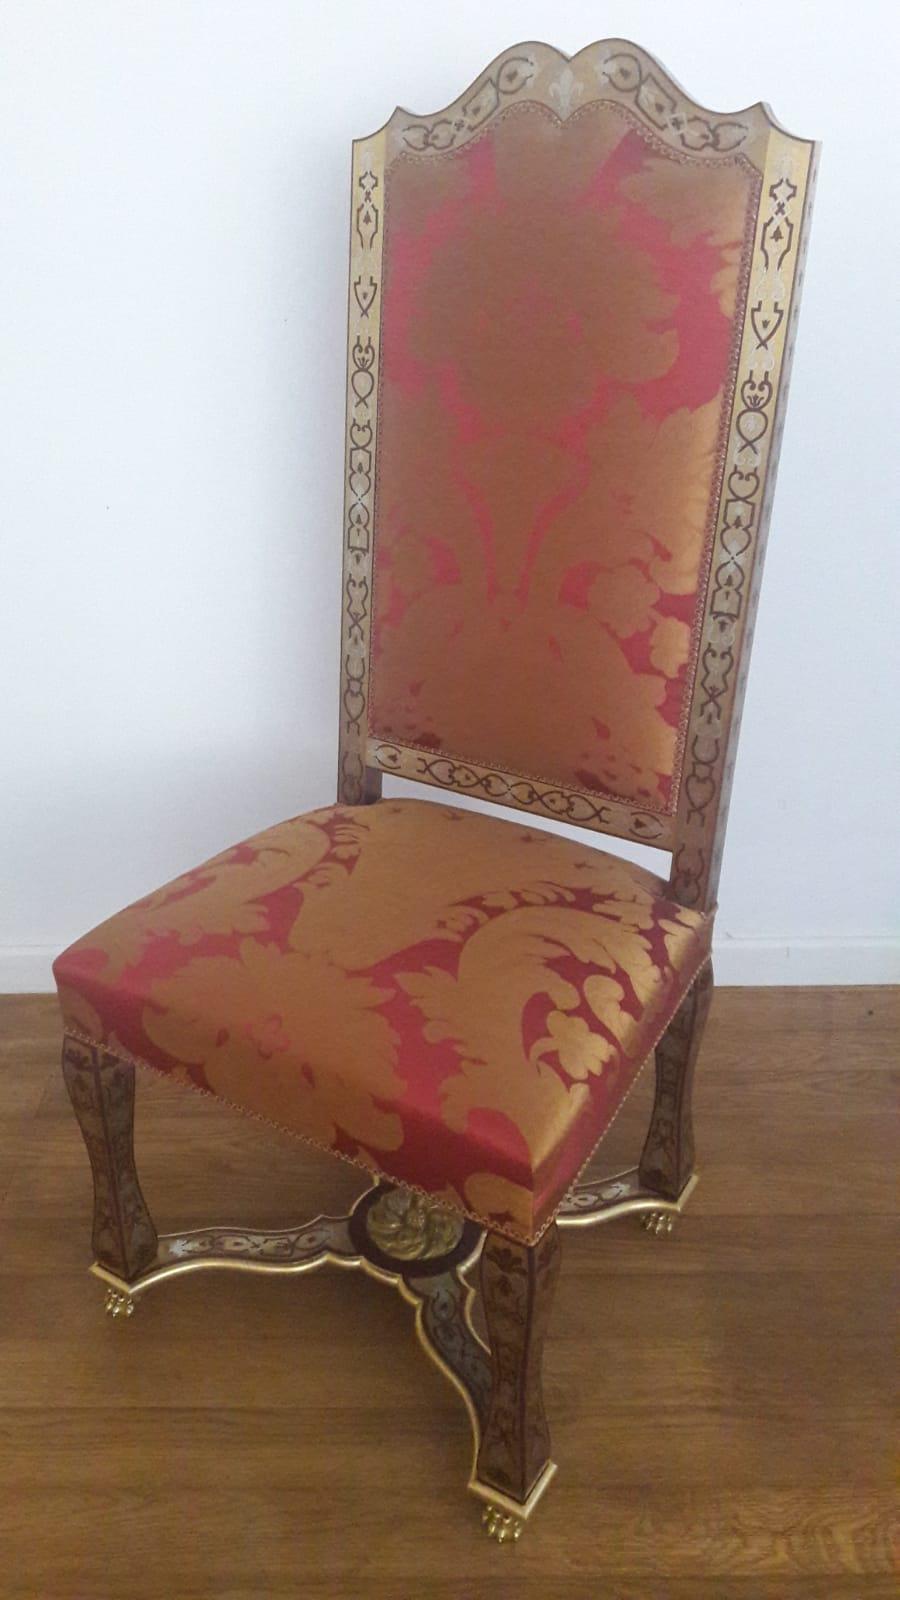 Einzigartiges Paar Stühle, geschaffen und signiert von einem der größten französischen Möbelschreiner, Atelier BHC.
Im Stil des 18. Jahrhunderts, inspiriert von einem berühmten französischen Schloss in der Nähe von Paris.
Erstaunliche